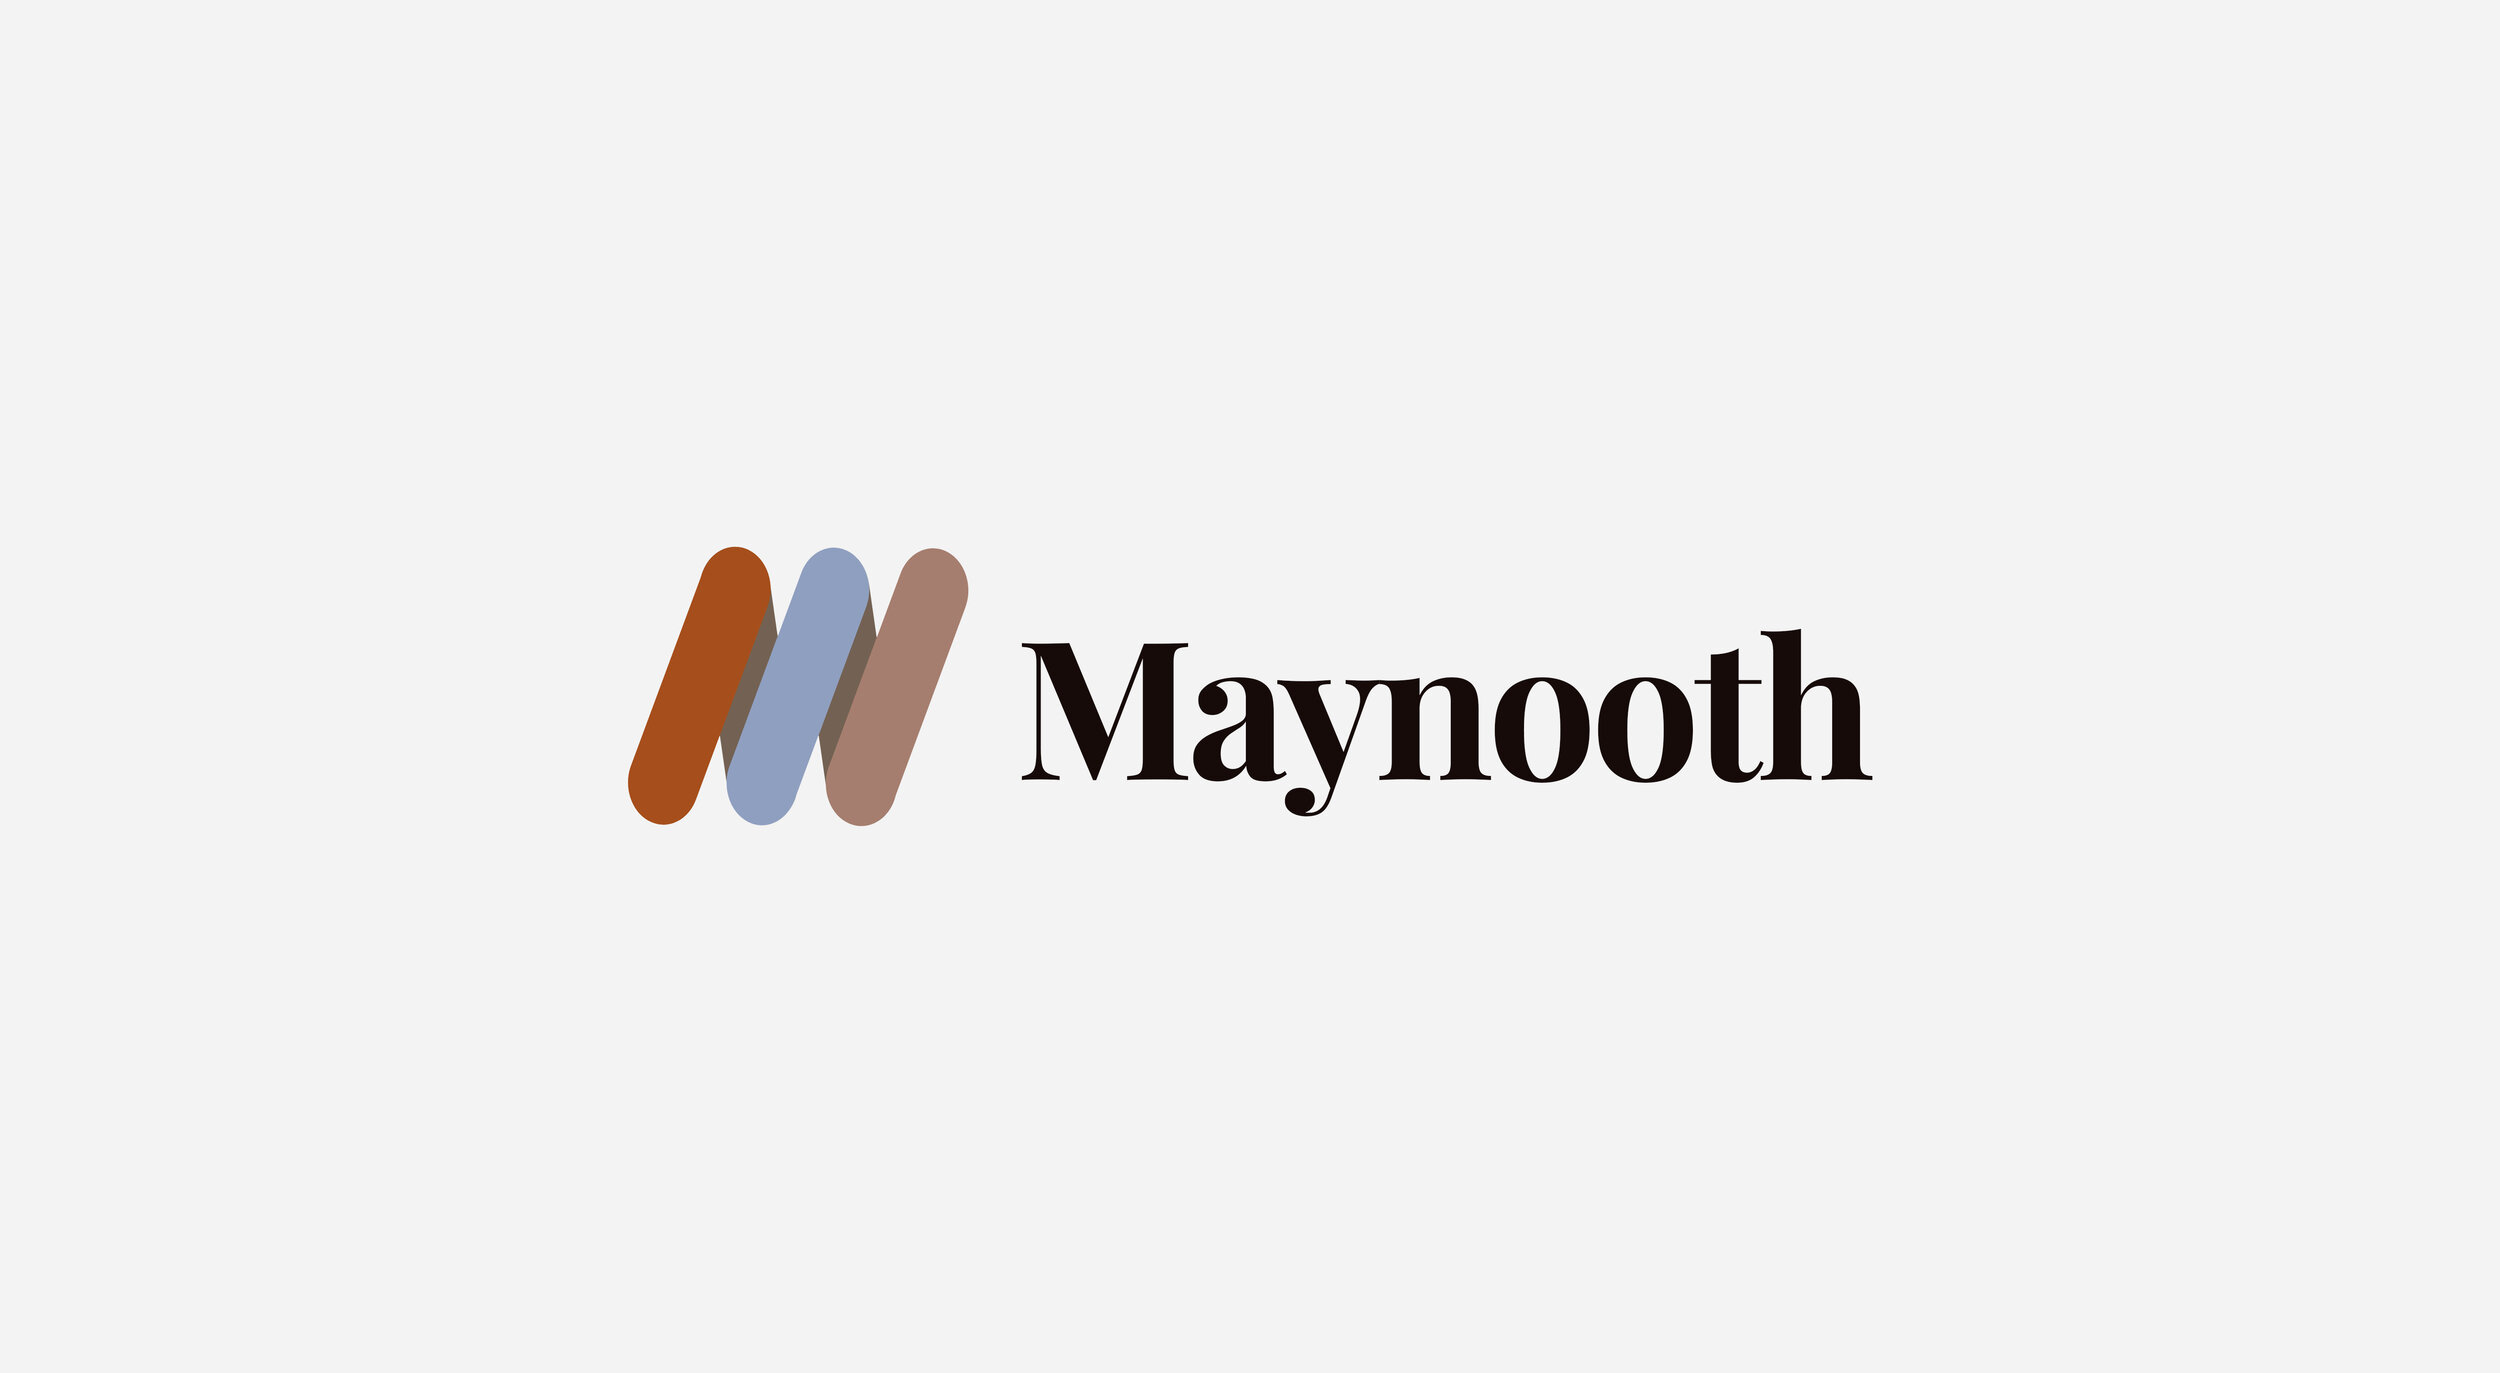 maynooth slide 1 2.jpg